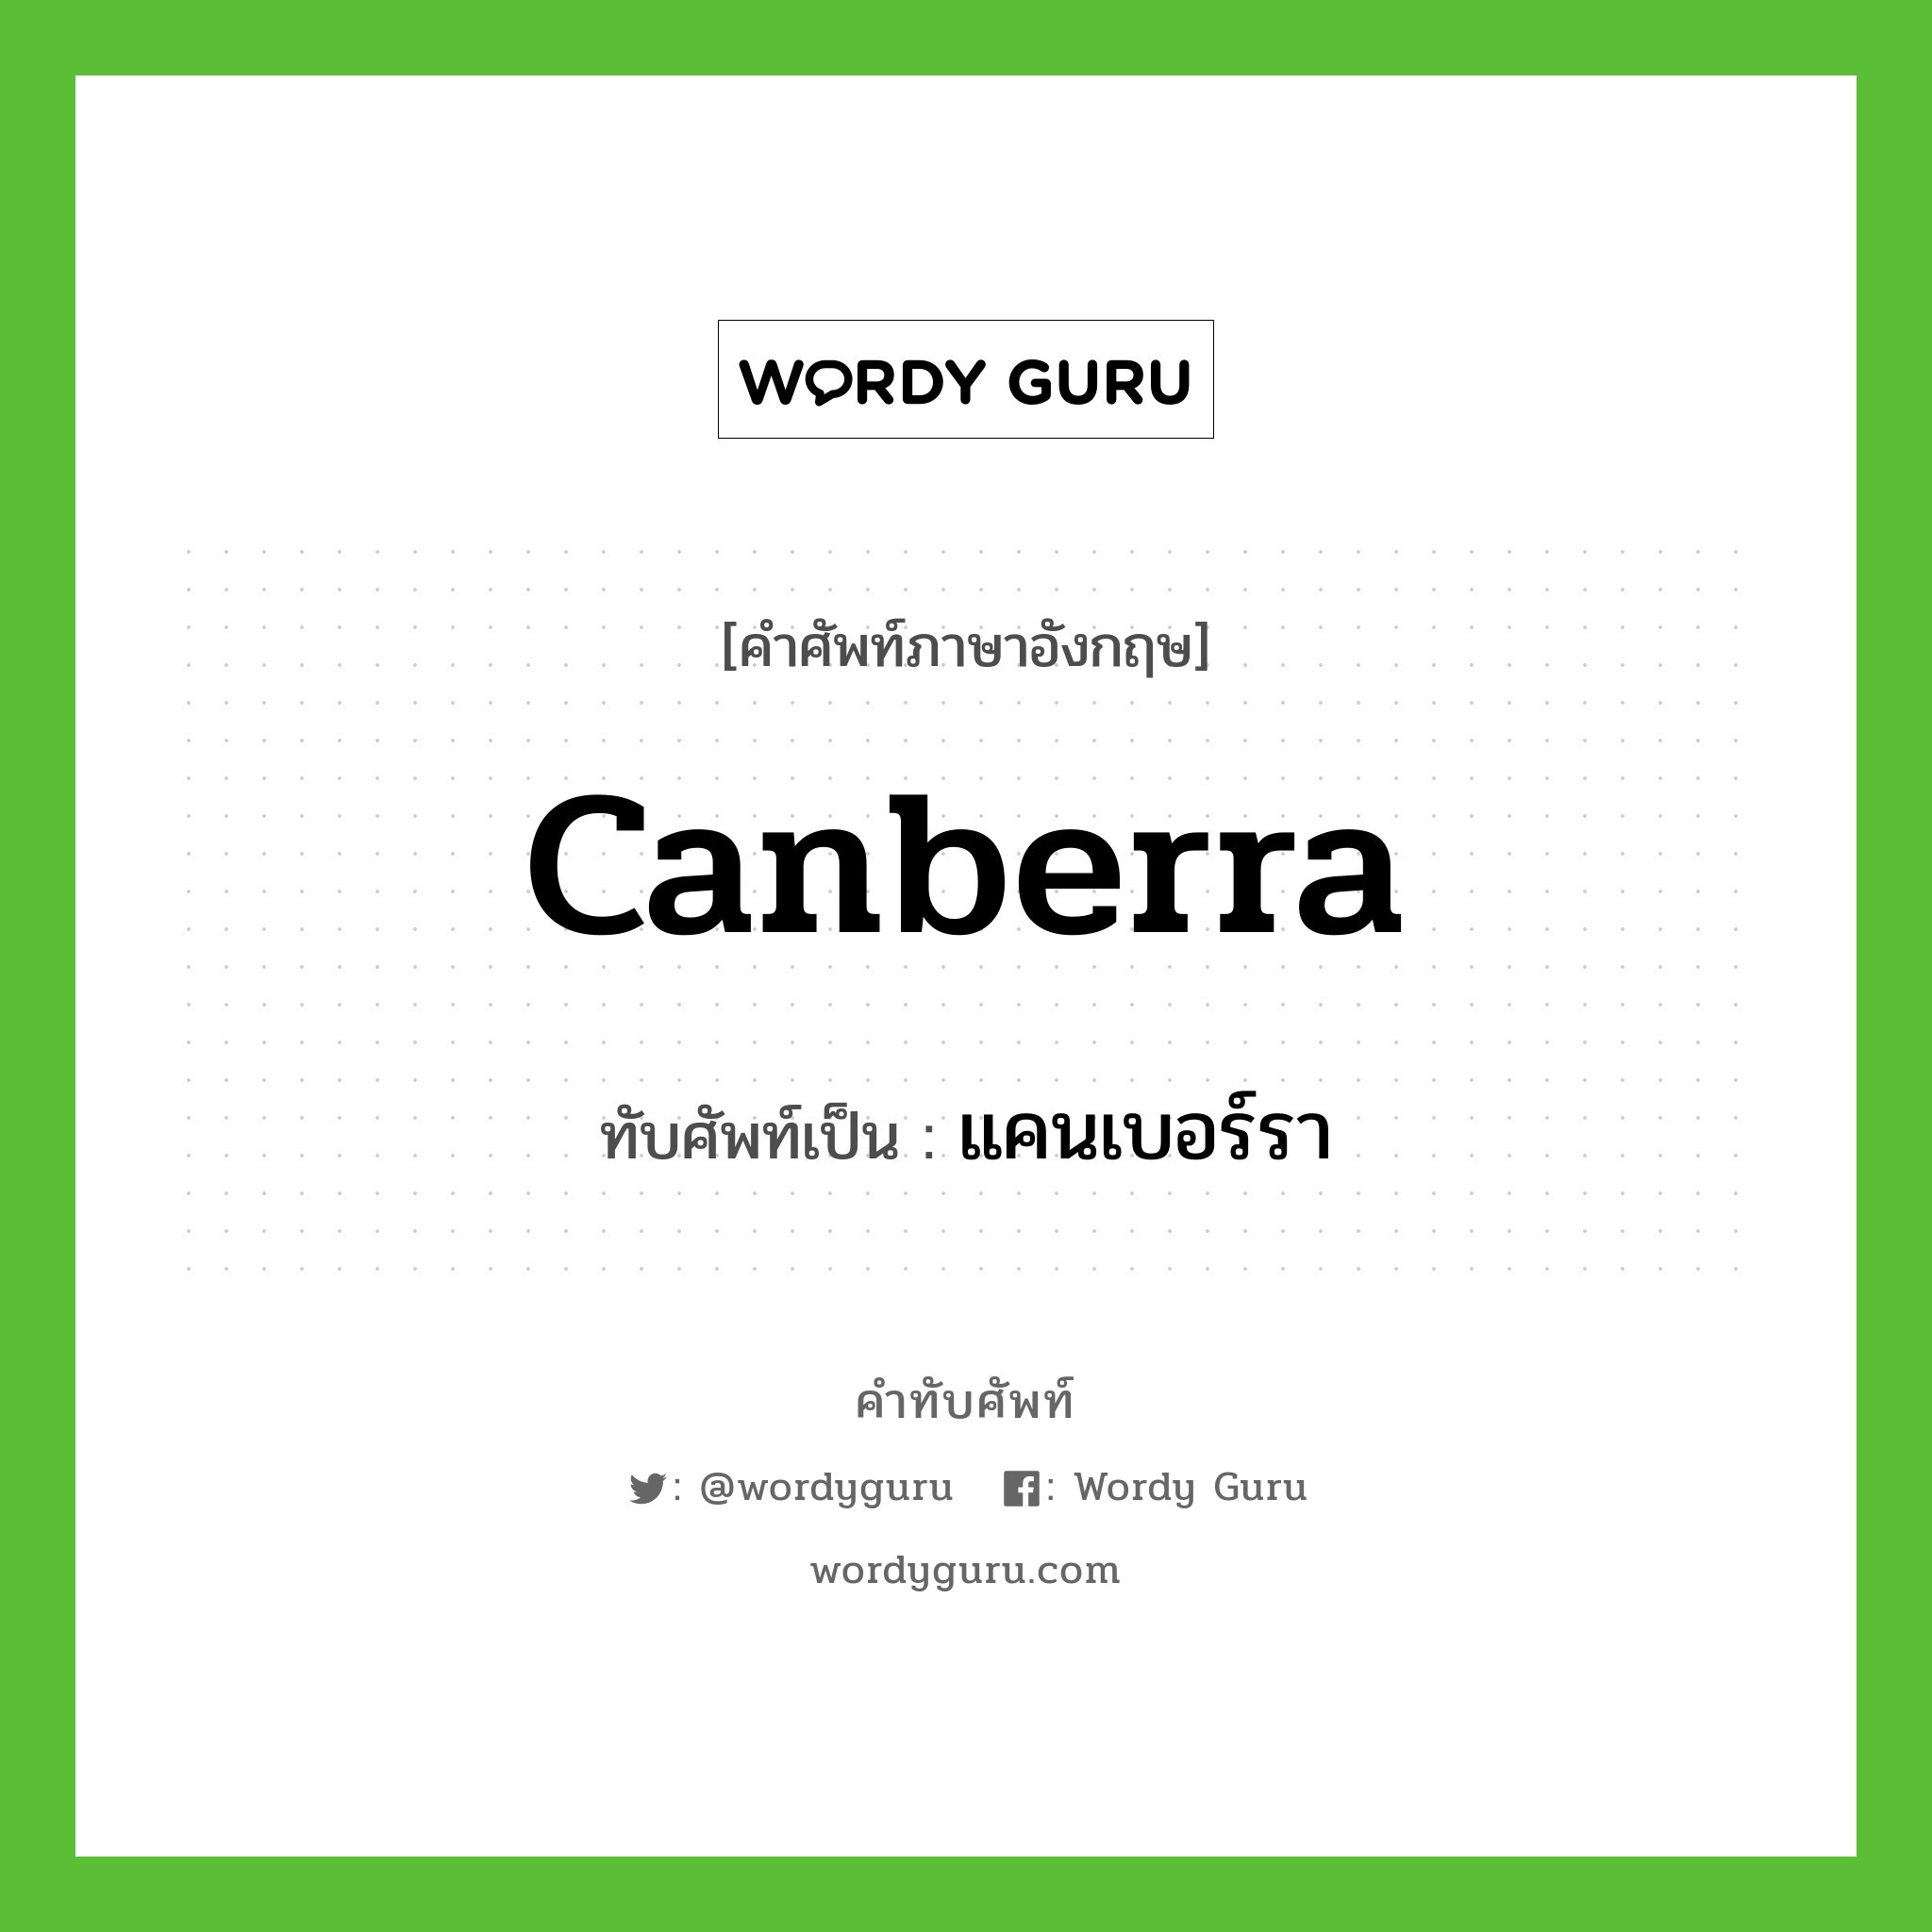 แคนเบอร์รา เขียนอย่างไร?, คำศัพท์ภาษาอังกฤษ แคนเบอร์รา ทับศัพท์เป็น Canberra